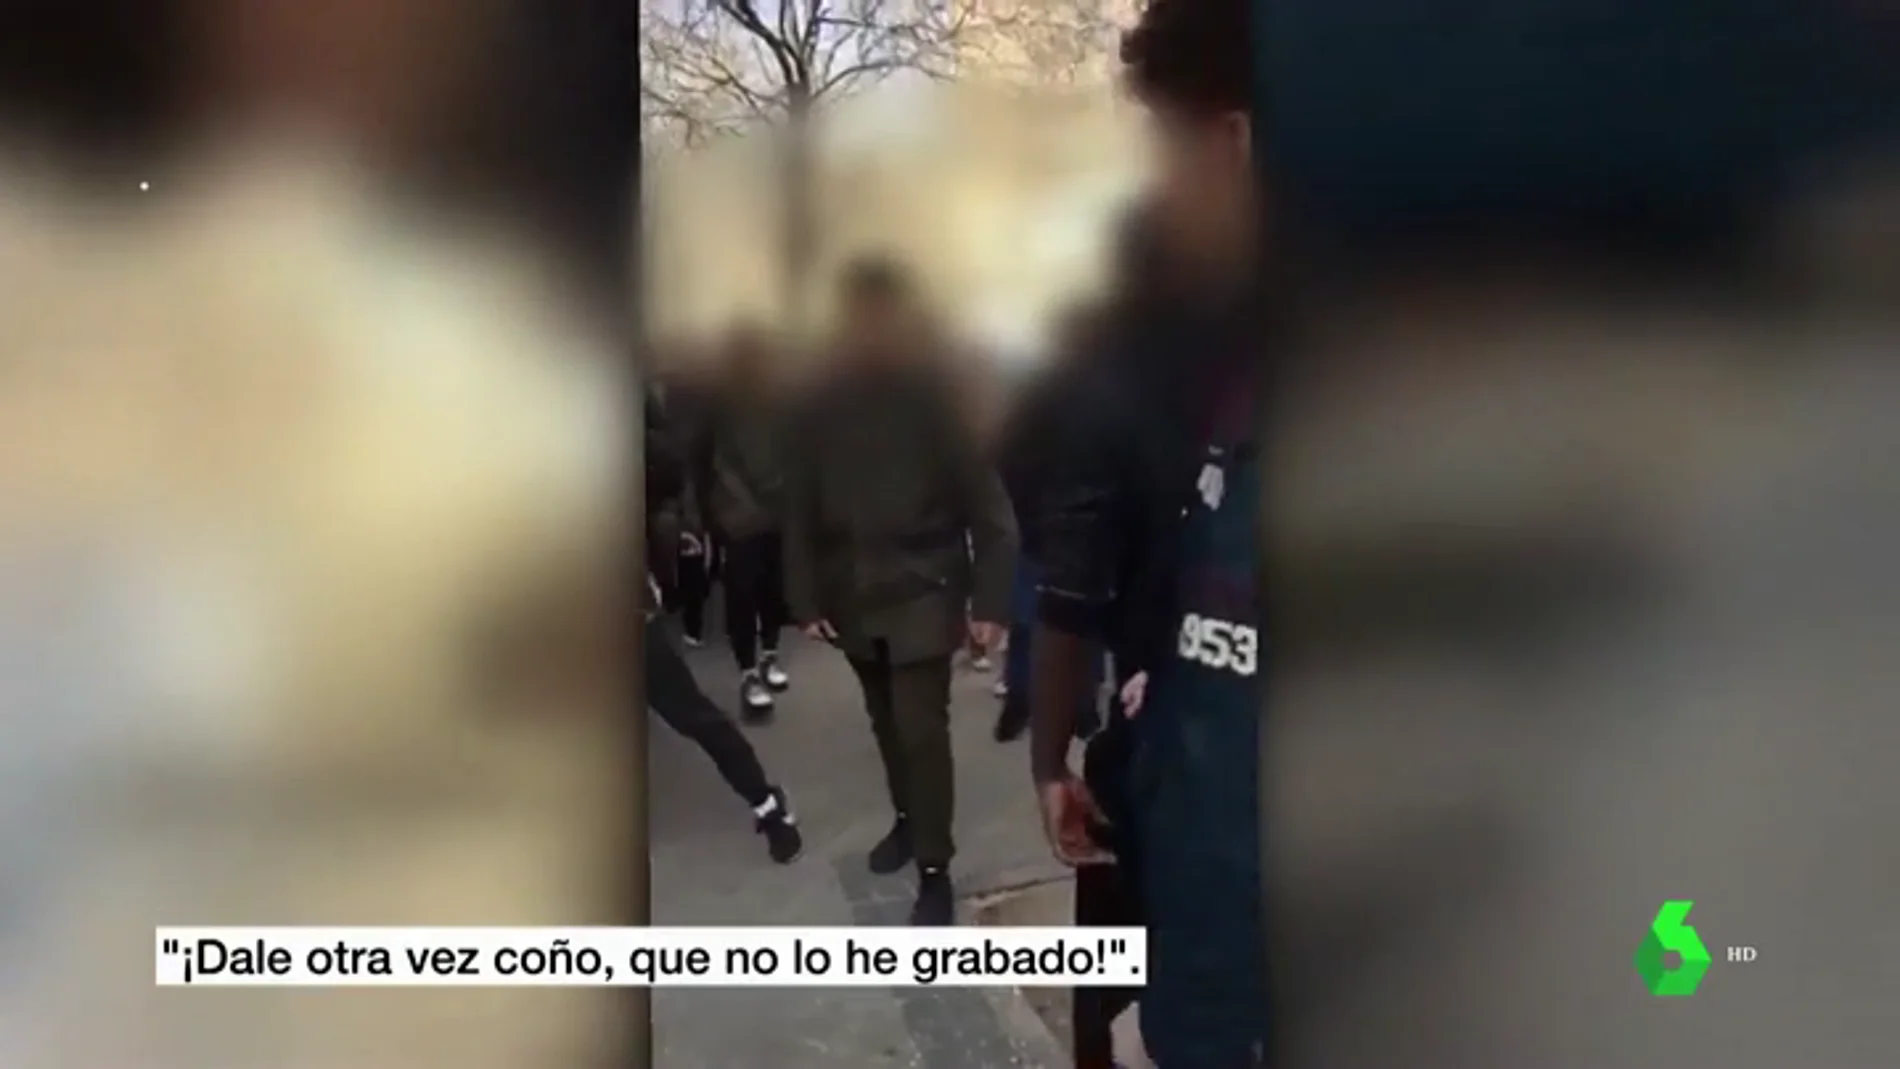 La Policía investiga dos nuevos vídeos de peleas entre menores en Madrid